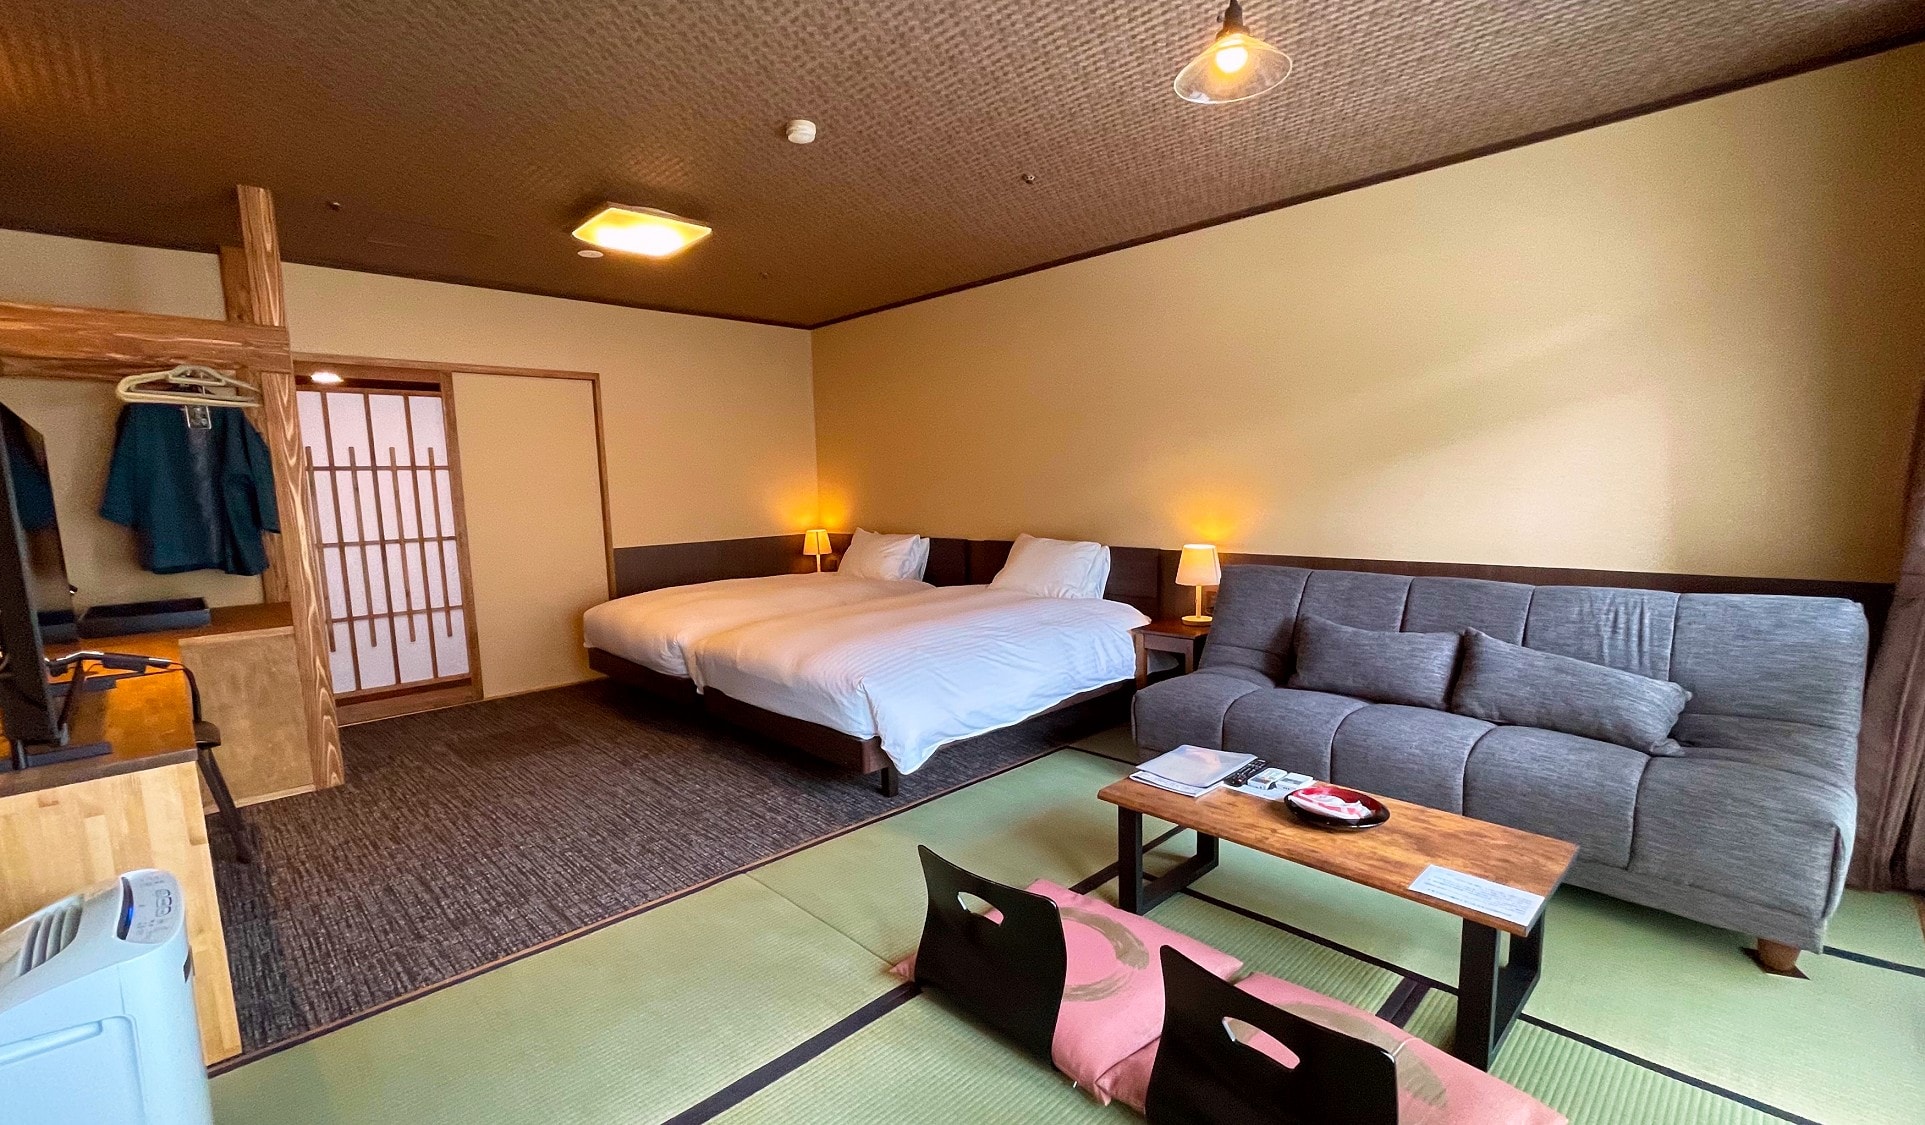 【日式現代雙床房/22年裝修】西式榻榻米房間32平方米◆帶淋浴